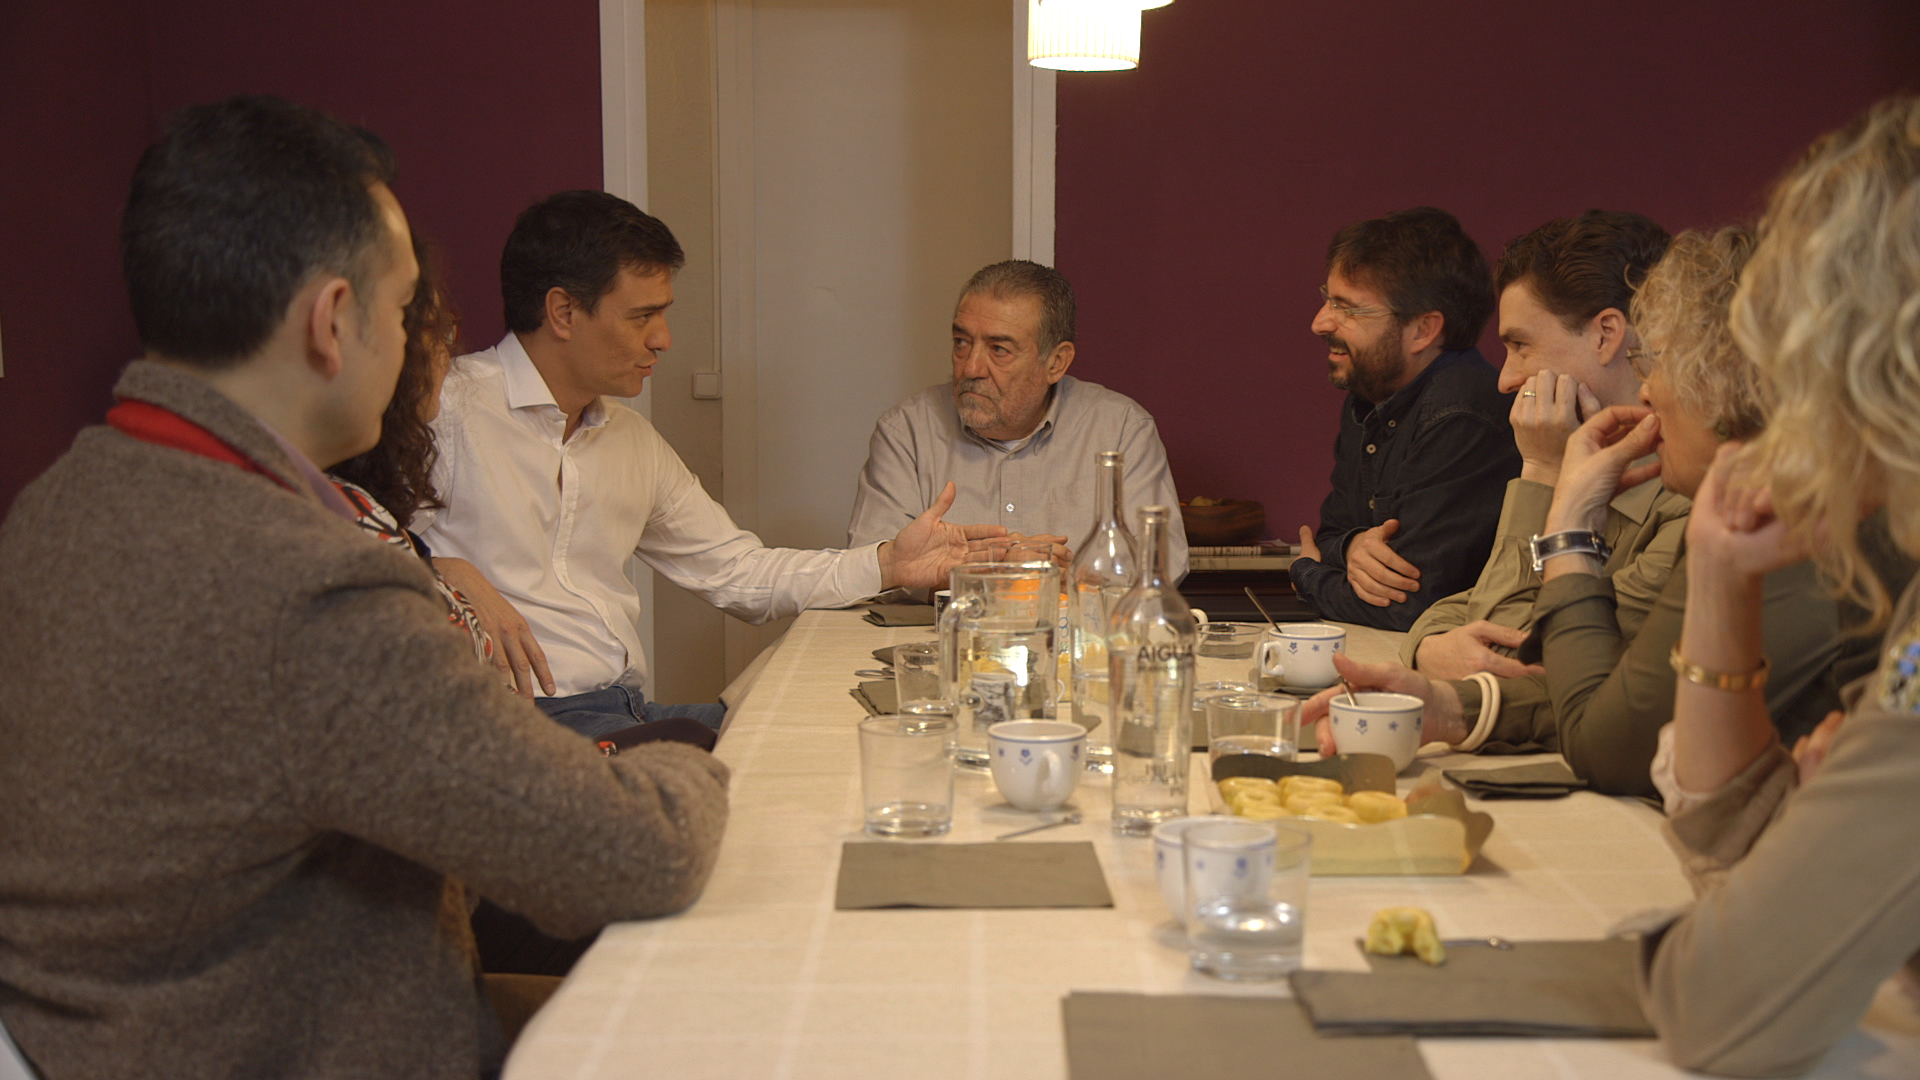 Temporada 9 ¿Cómo ven al PSOE actual y a su líder en una familia de izquierdas?